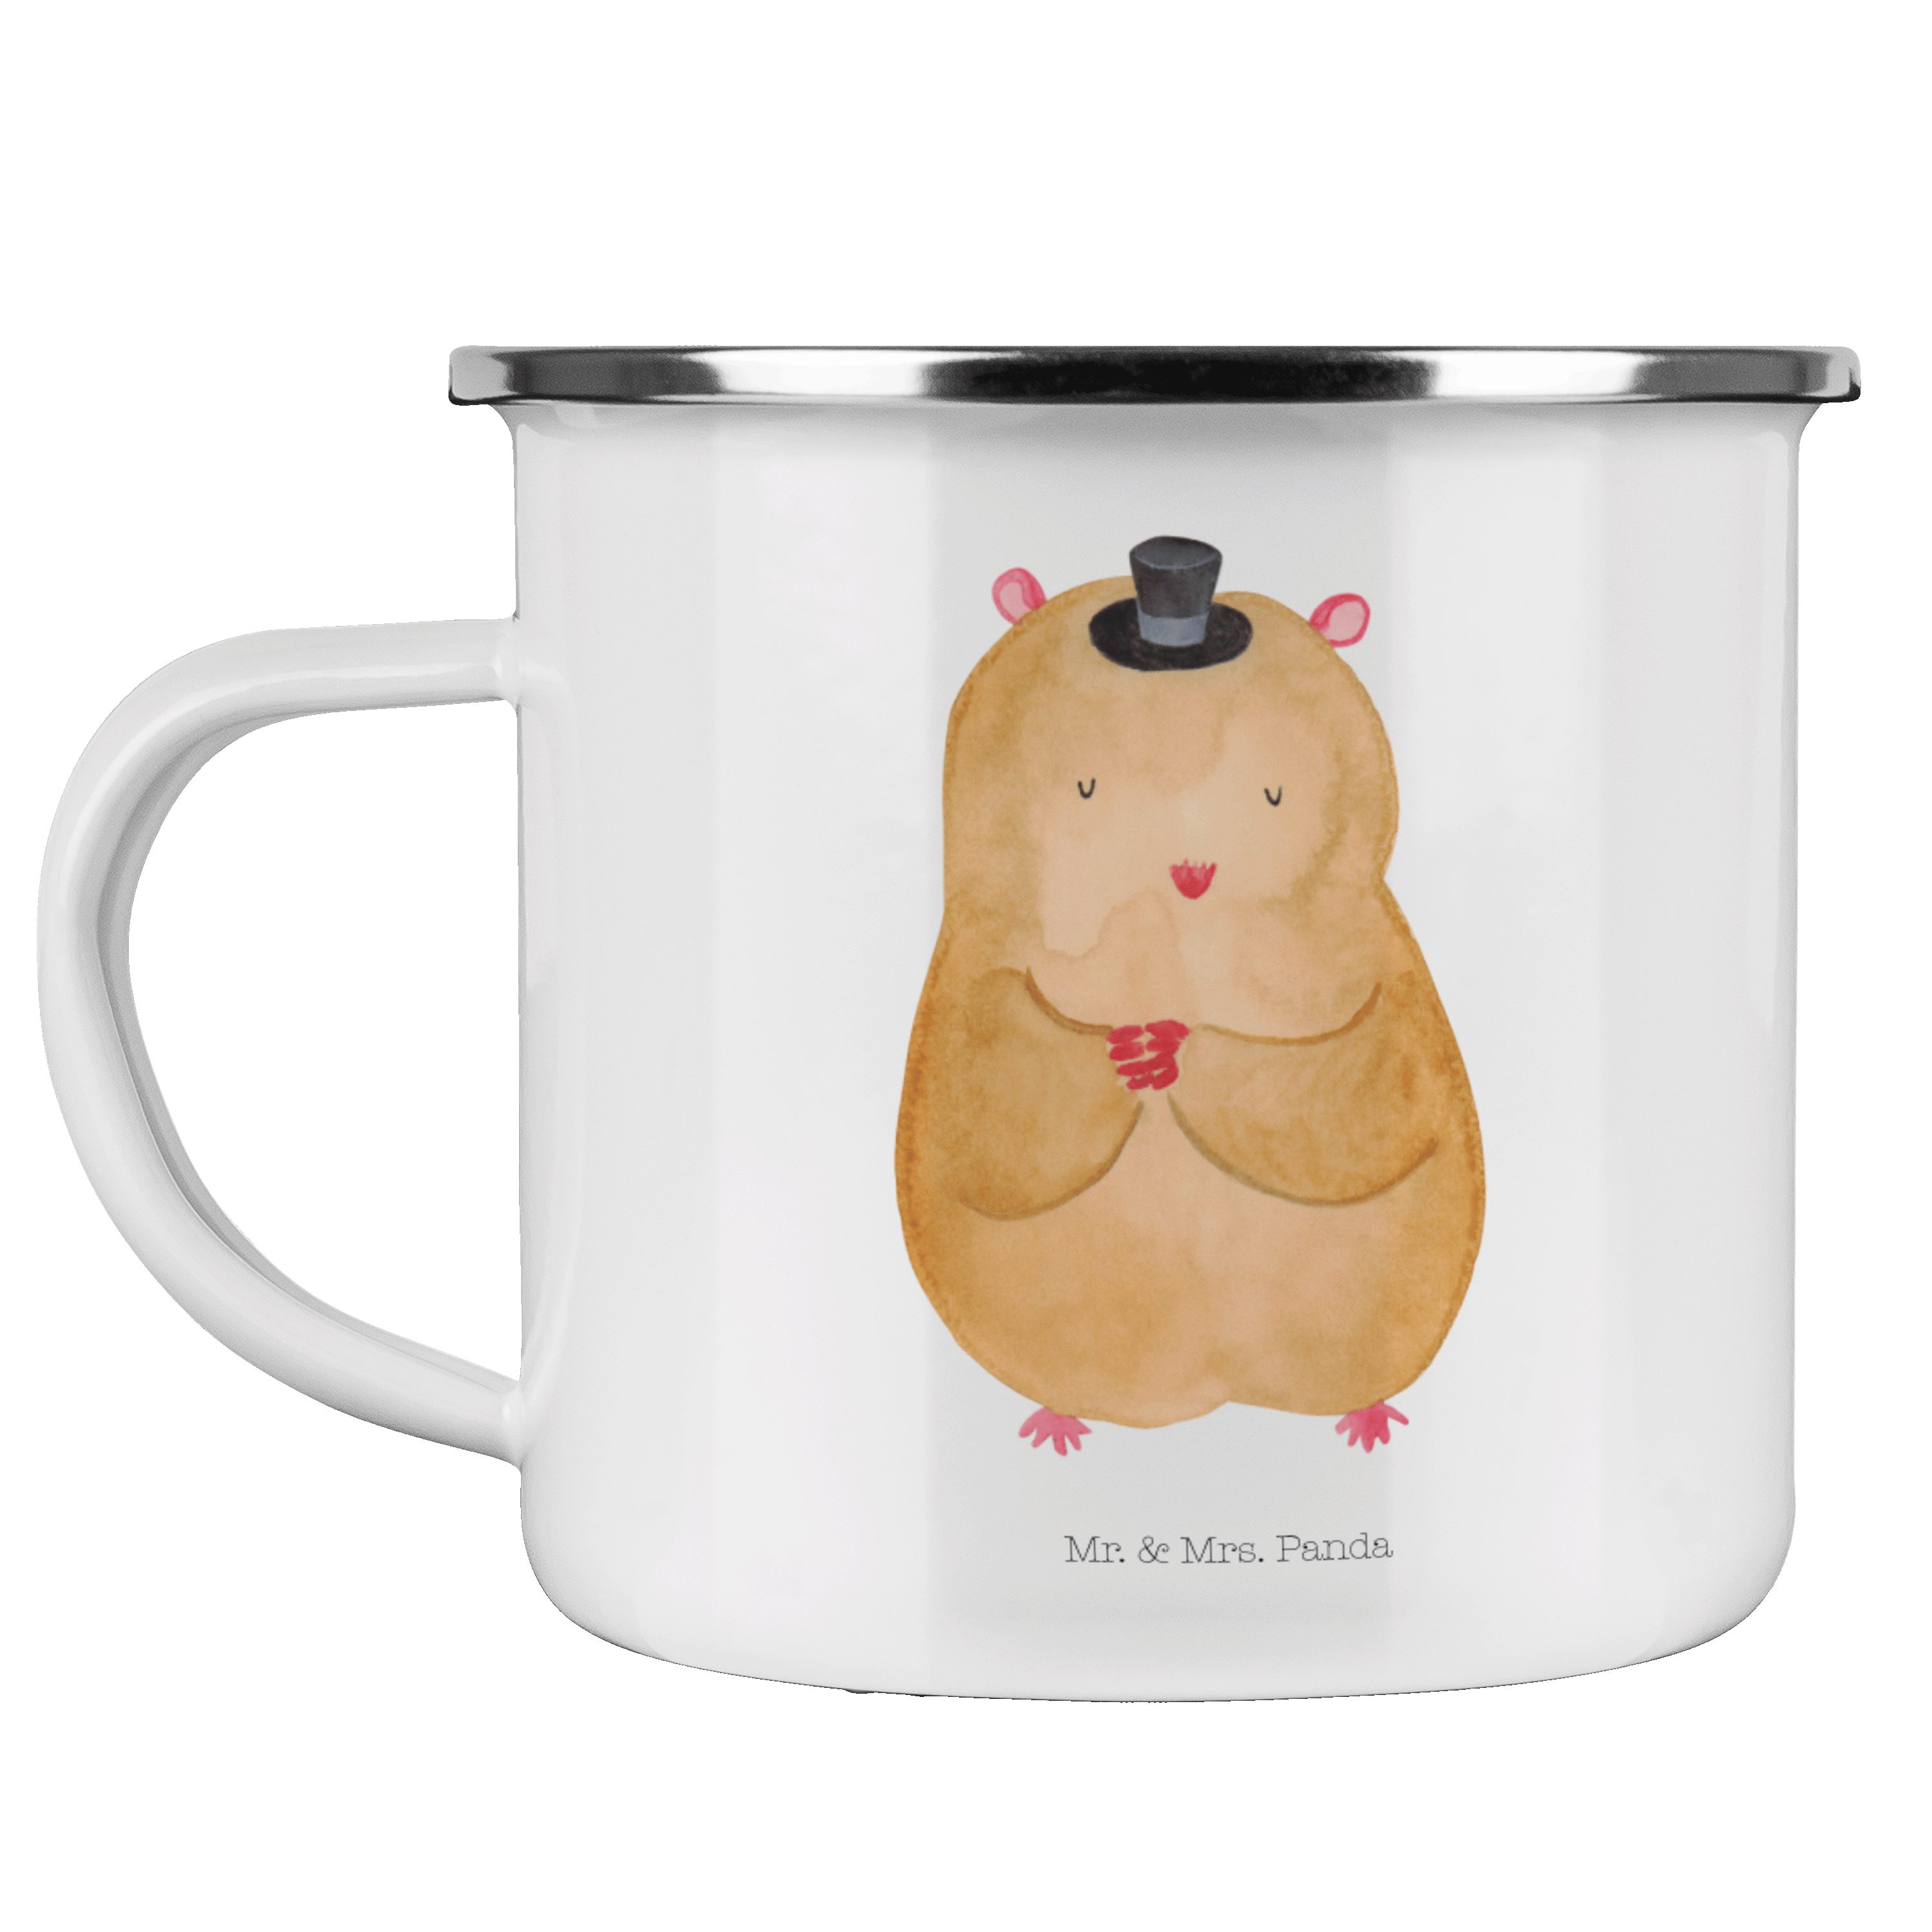 Mr. & Mrs. Panda Becher Hamster mit Hut - Weiß - Geschenk, Campingtasse, Trinkbecher, Emaille, Emaille